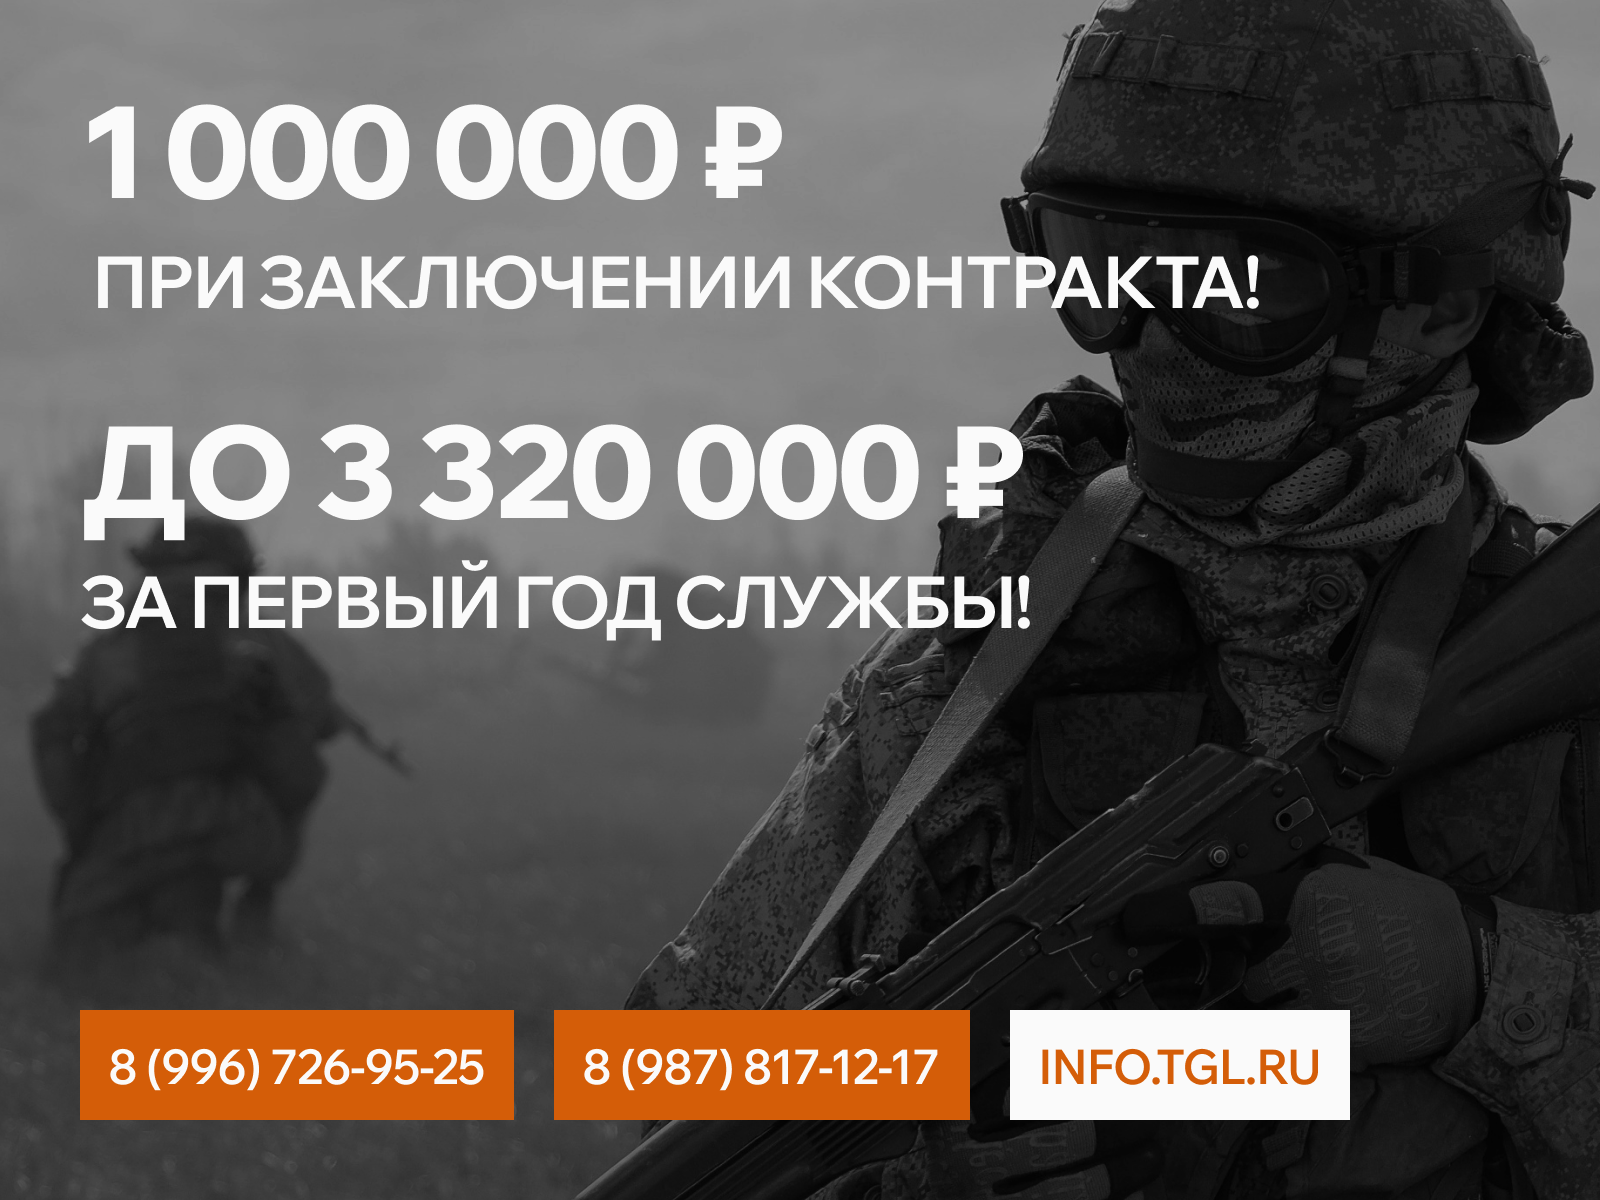 Актуальная информация о контрактной военной службе – info.tgl.ru